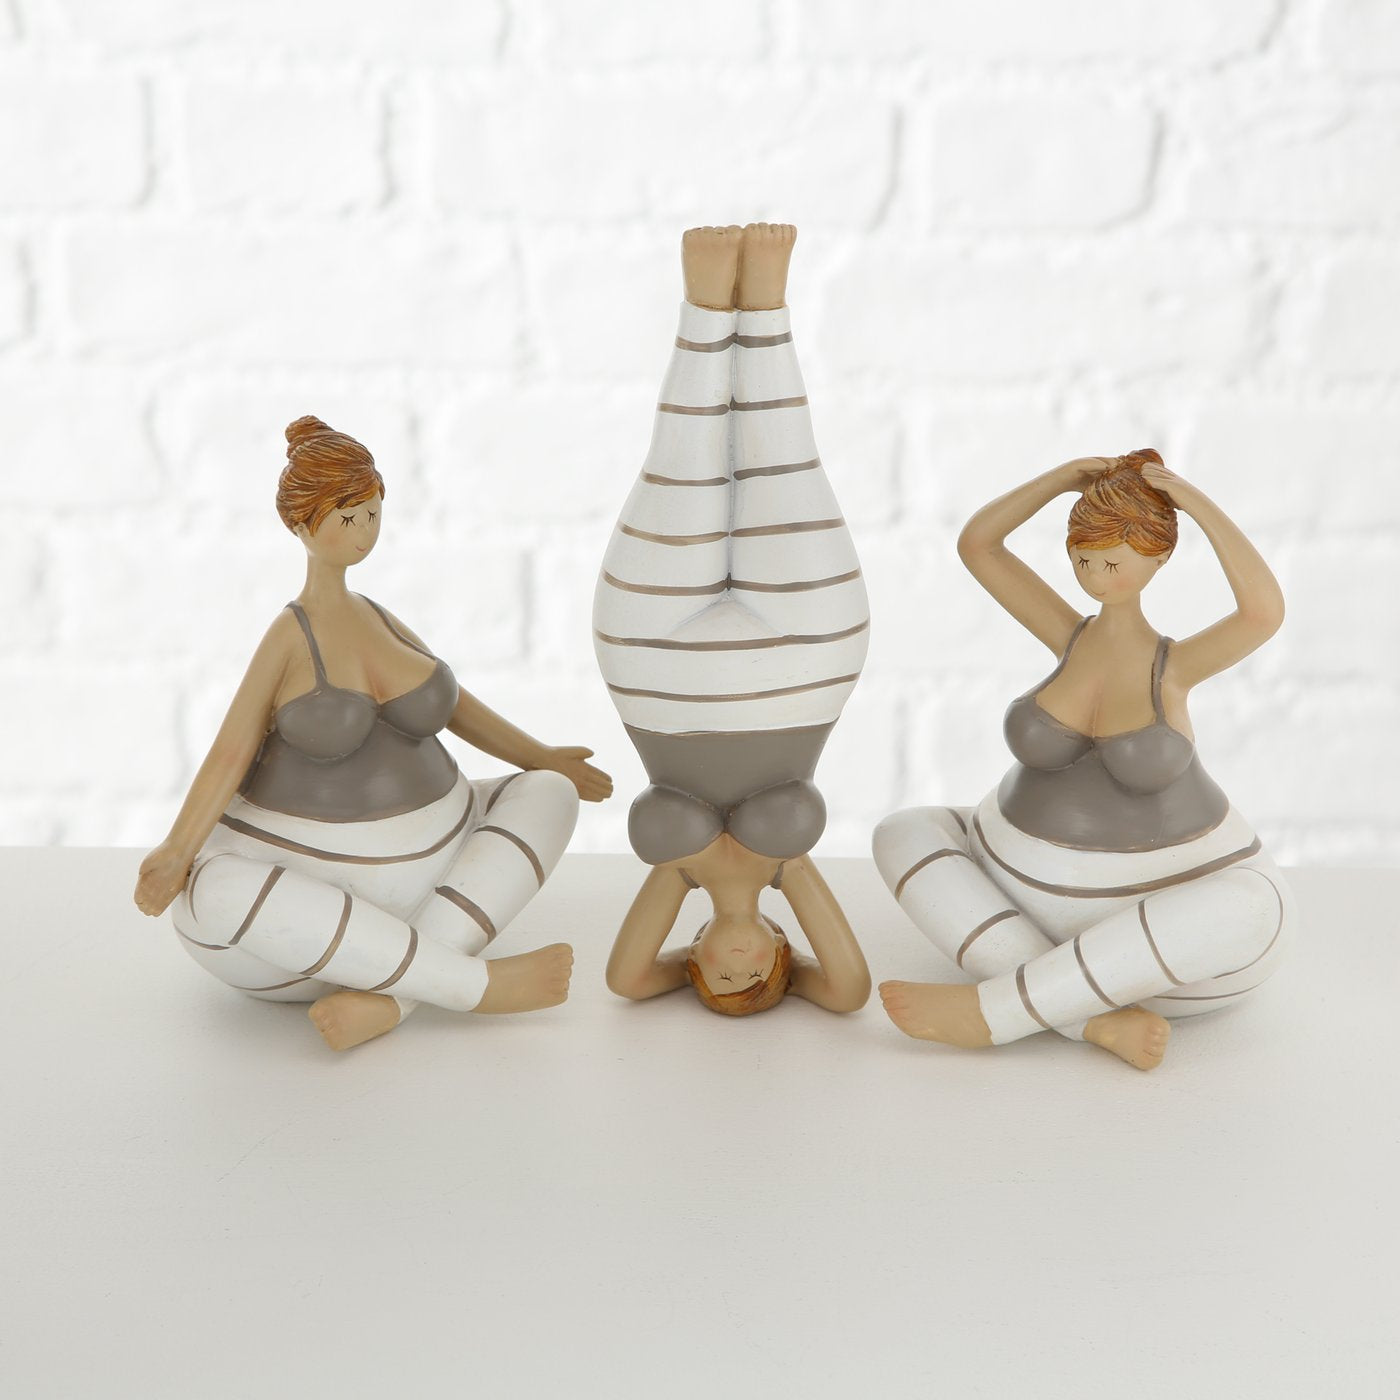 Yoga ladies - 3 designs